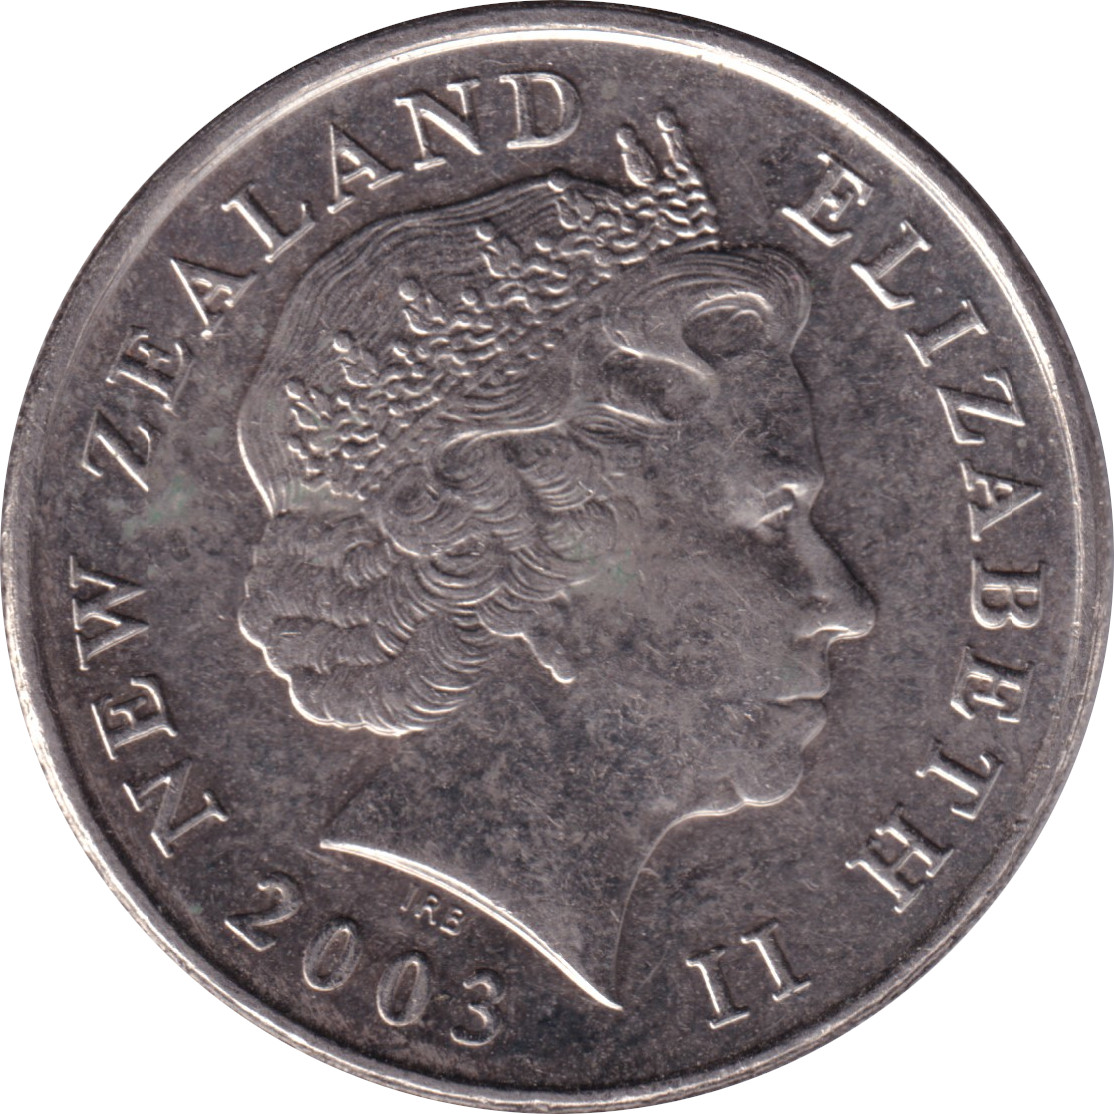 10 cents - Elizabeth II - Tête agée - Type 1